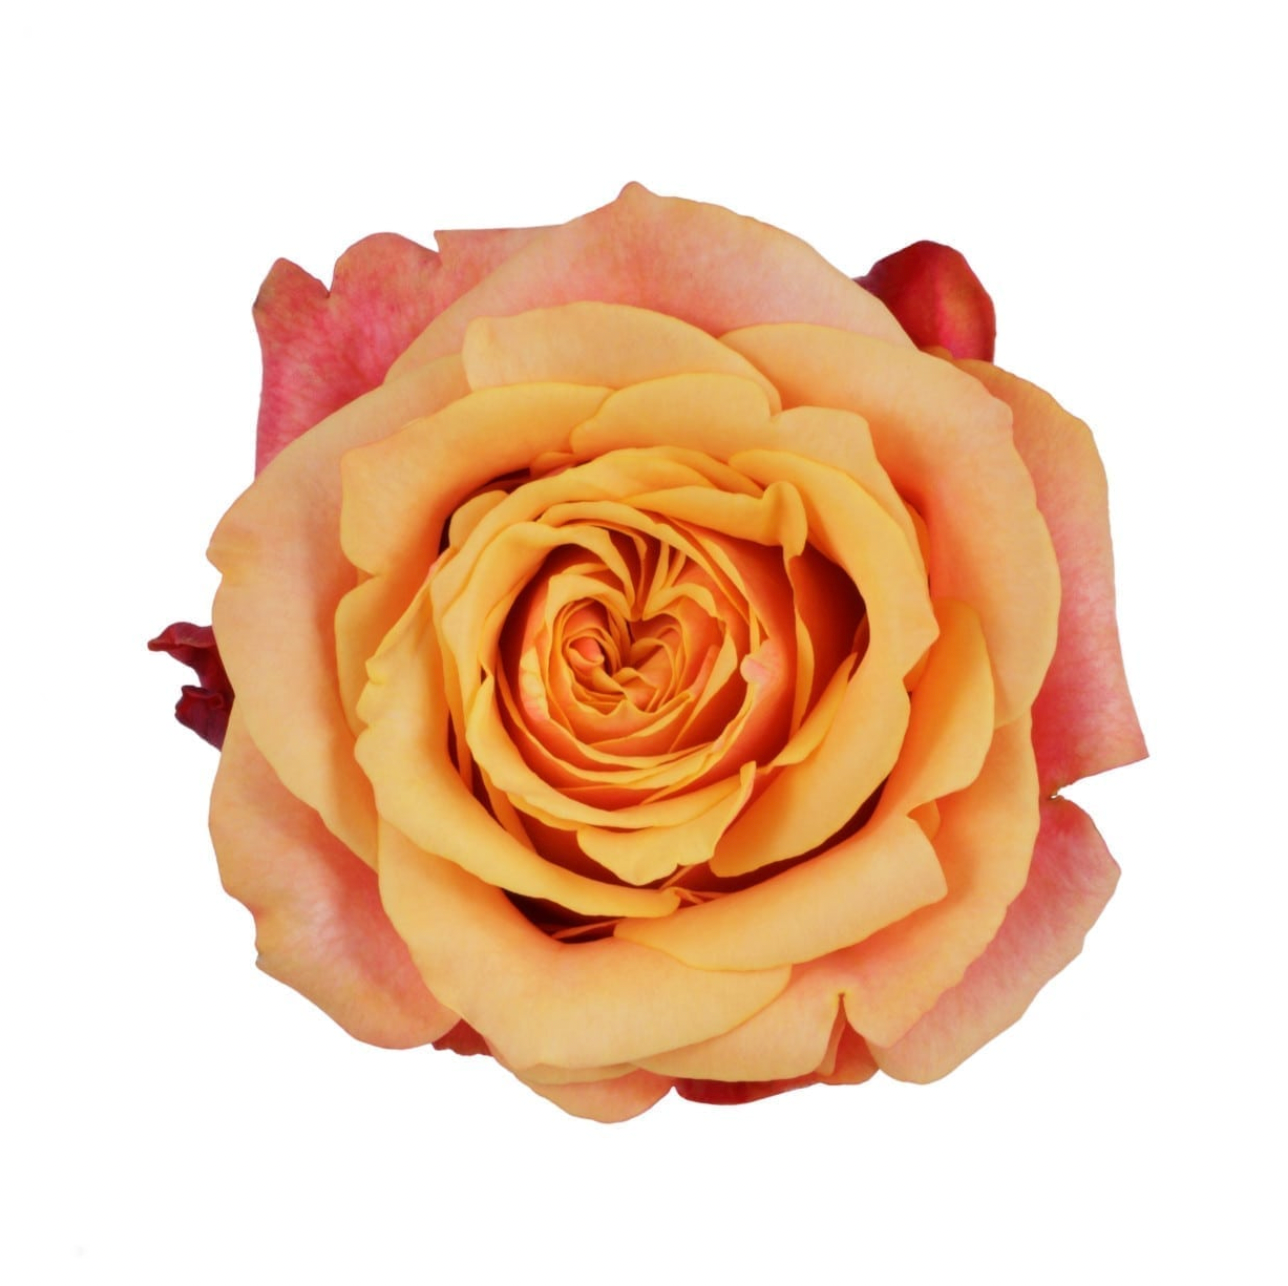 Roses - Cherry Brandy Orange Bicolor